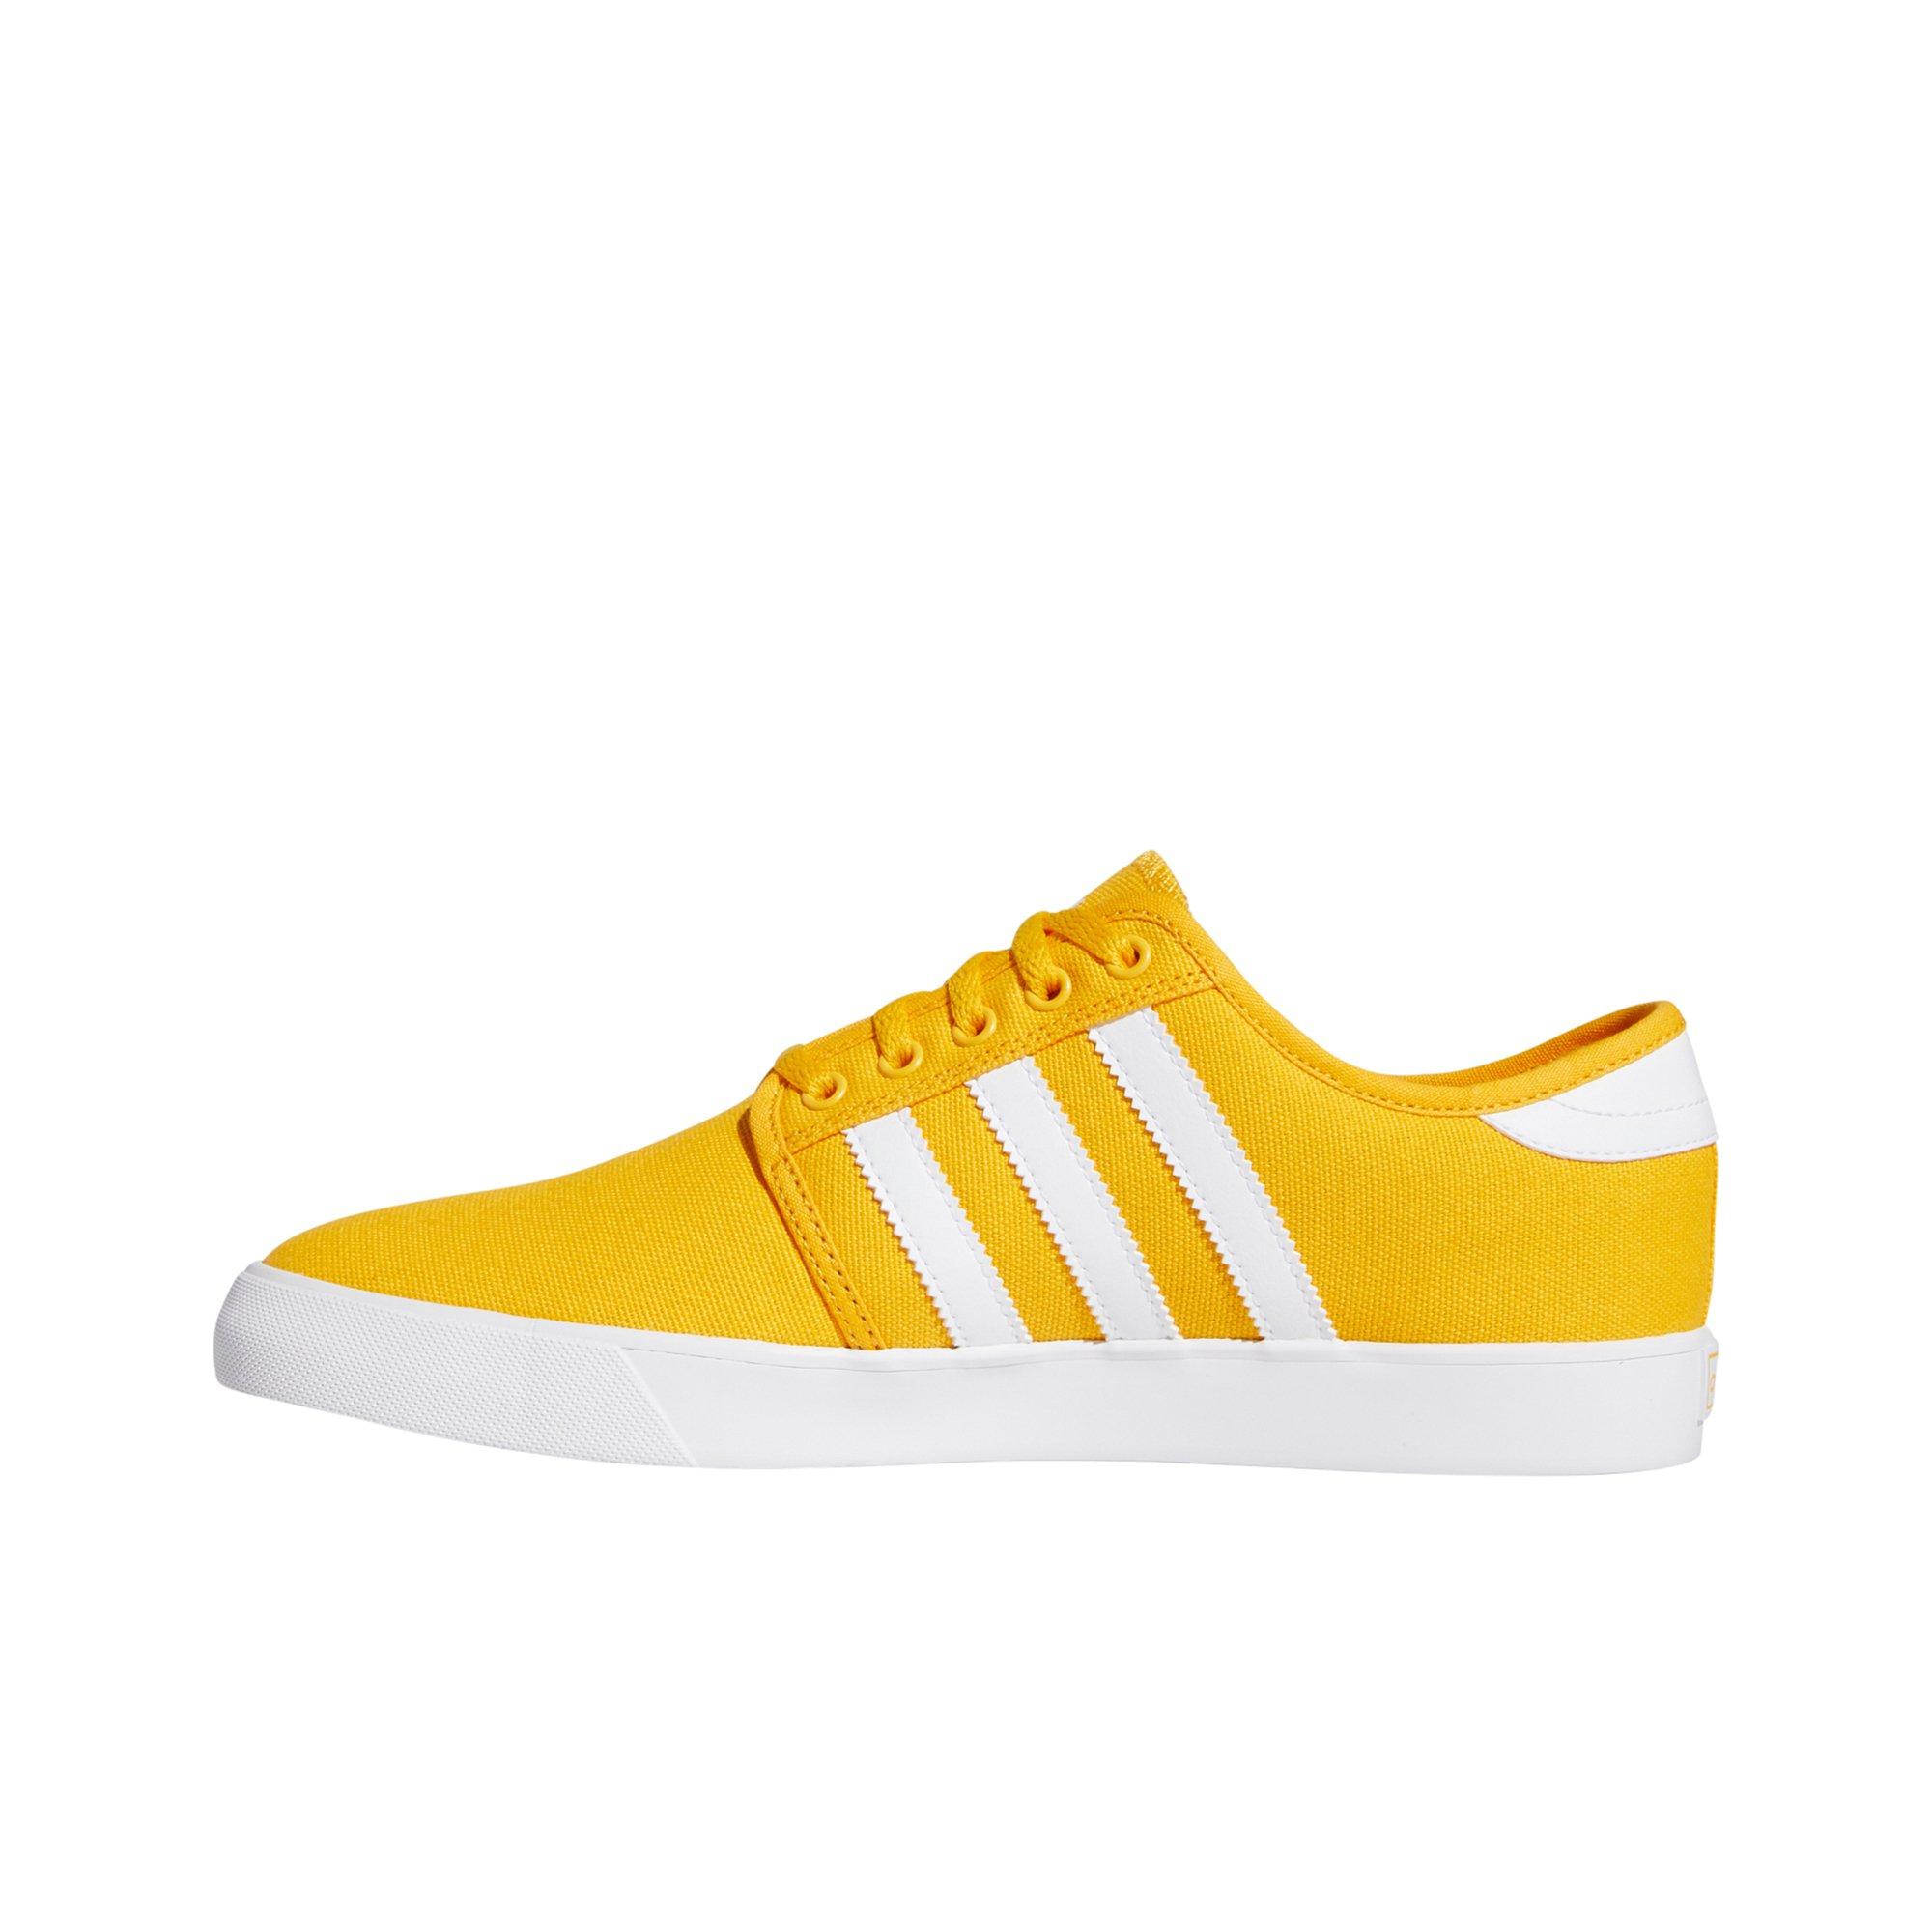 adidas seeley yellow